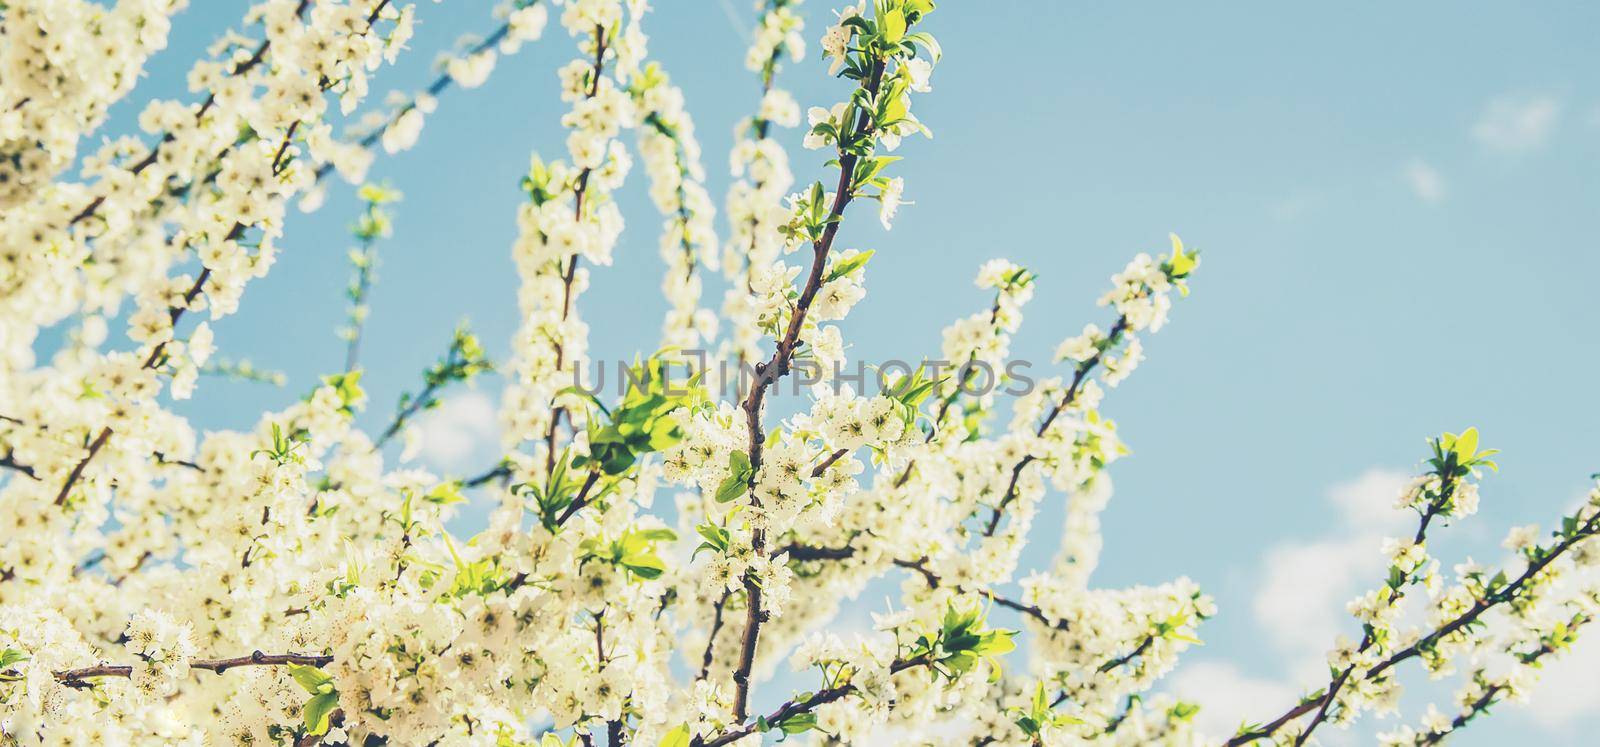 Spring flowering trees. Blooming garden. Selective focus. by yanadjana